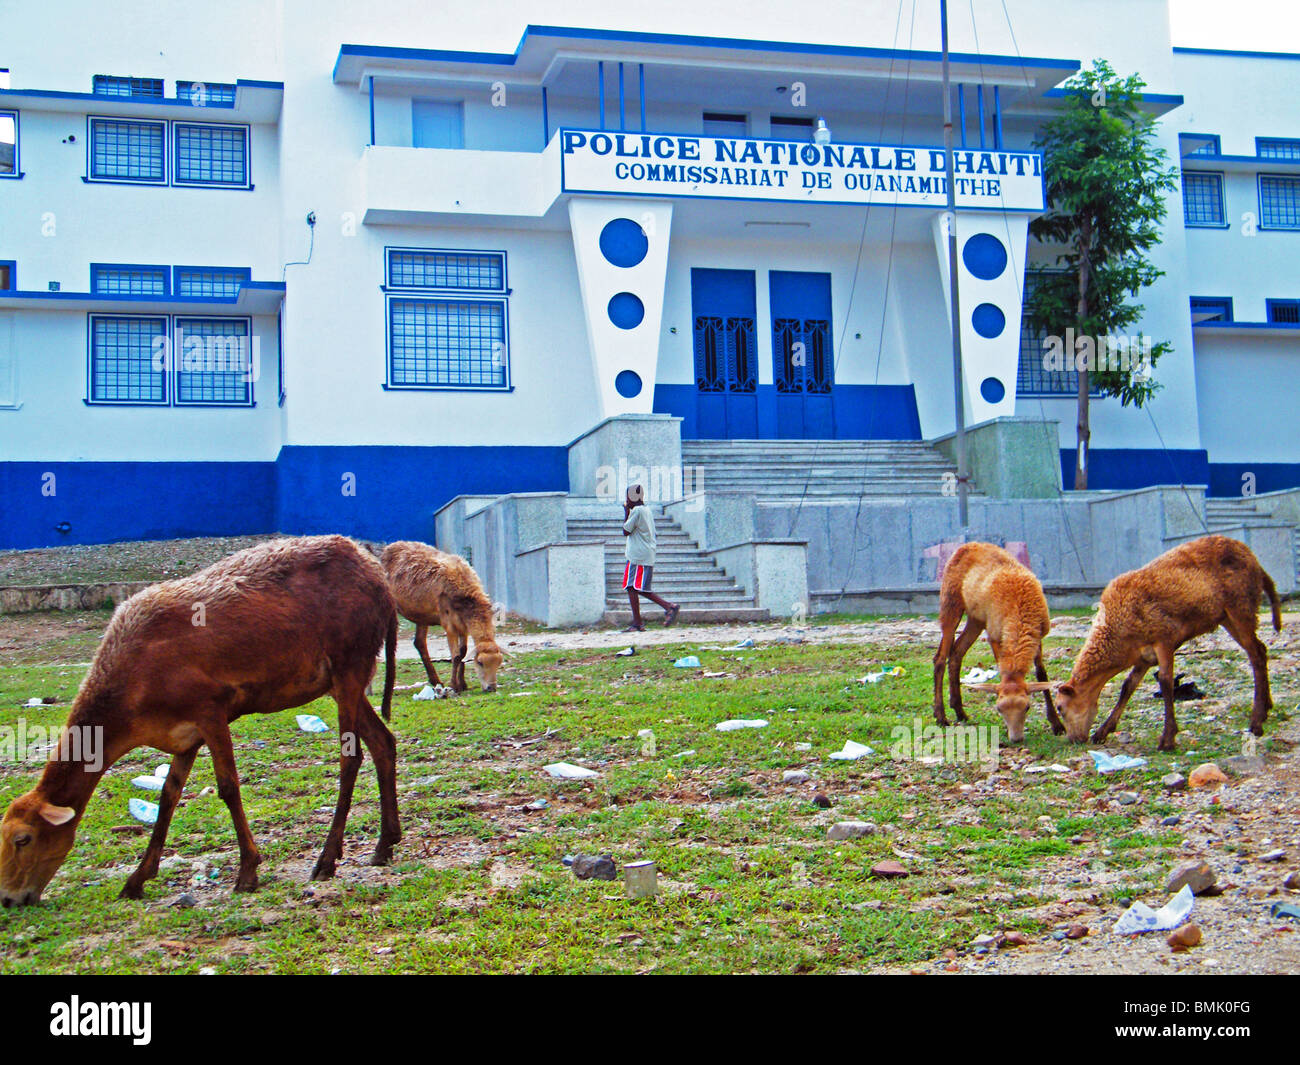 Les chèvres paissent en face de la station de police nationale haïtienne de Ouanaminthe, Haïti Banque D'Images